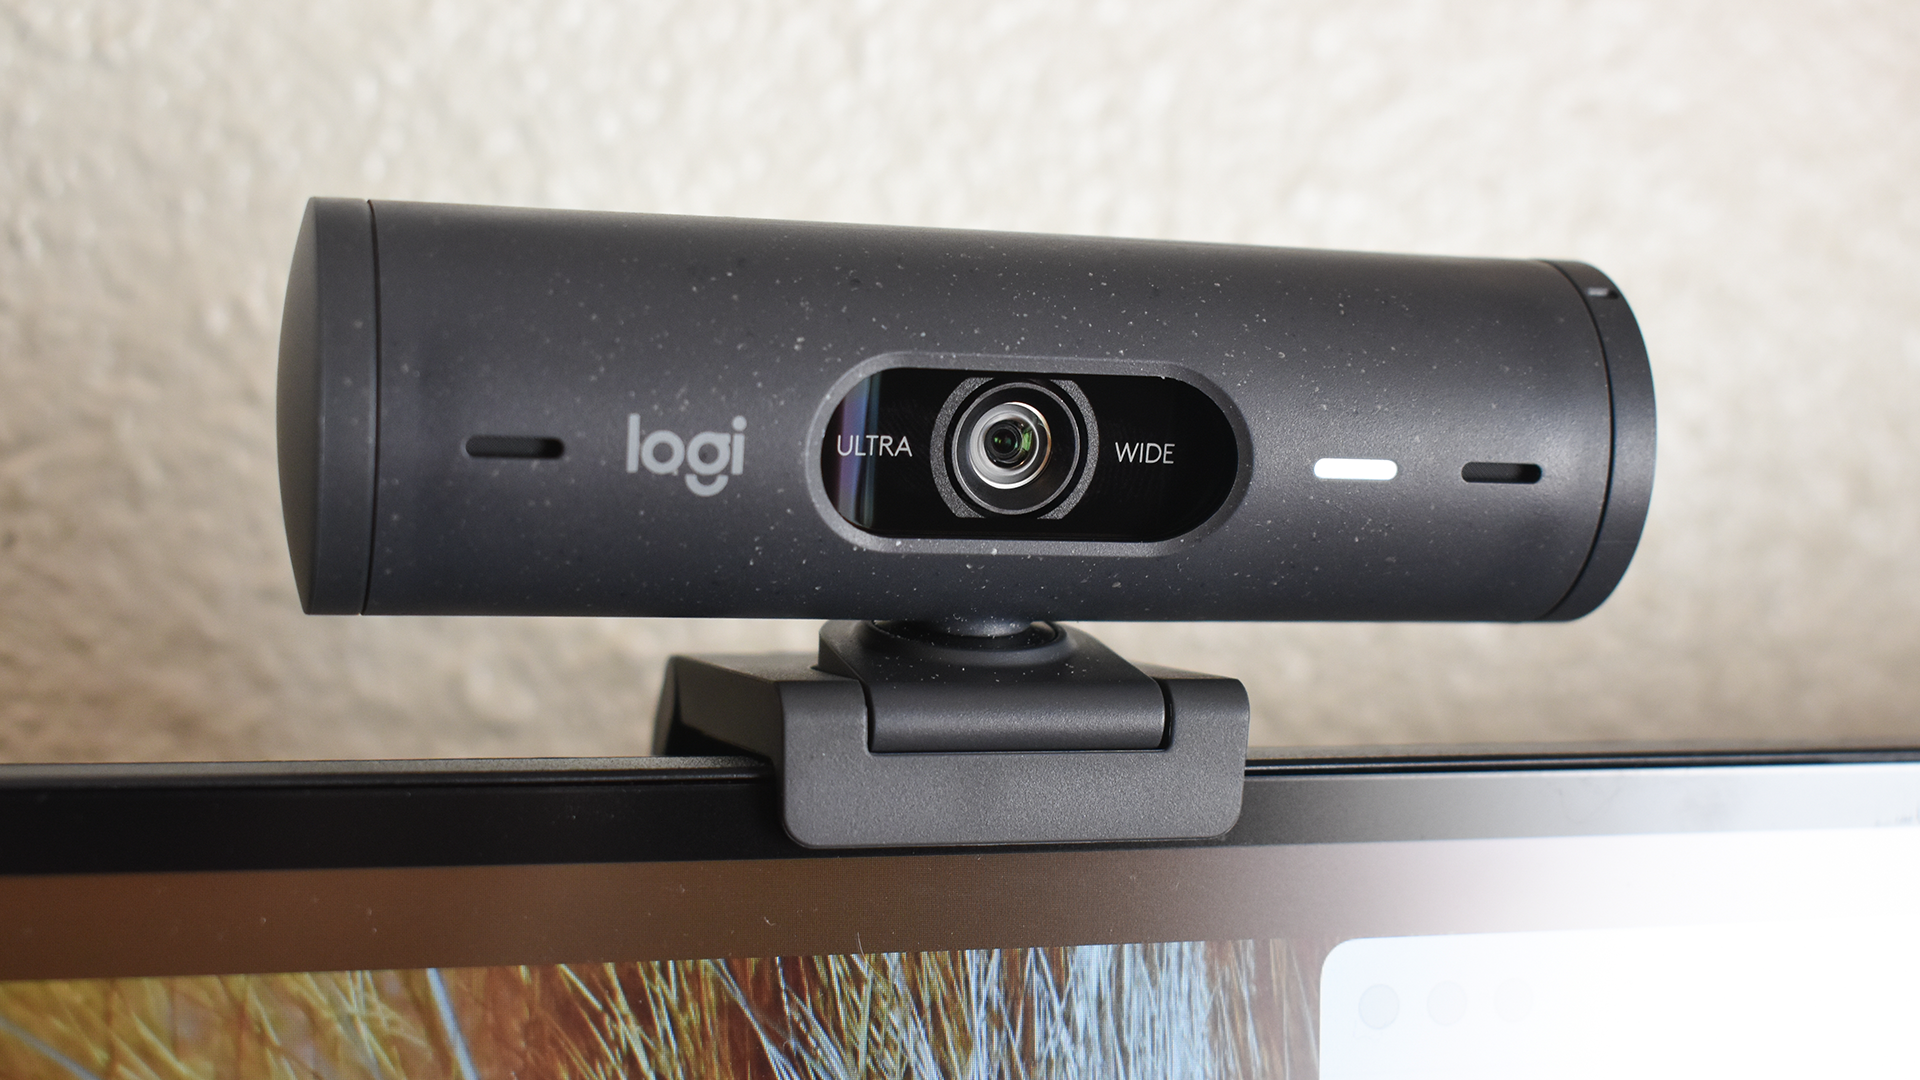 4K Webcam: Is It Worth It?